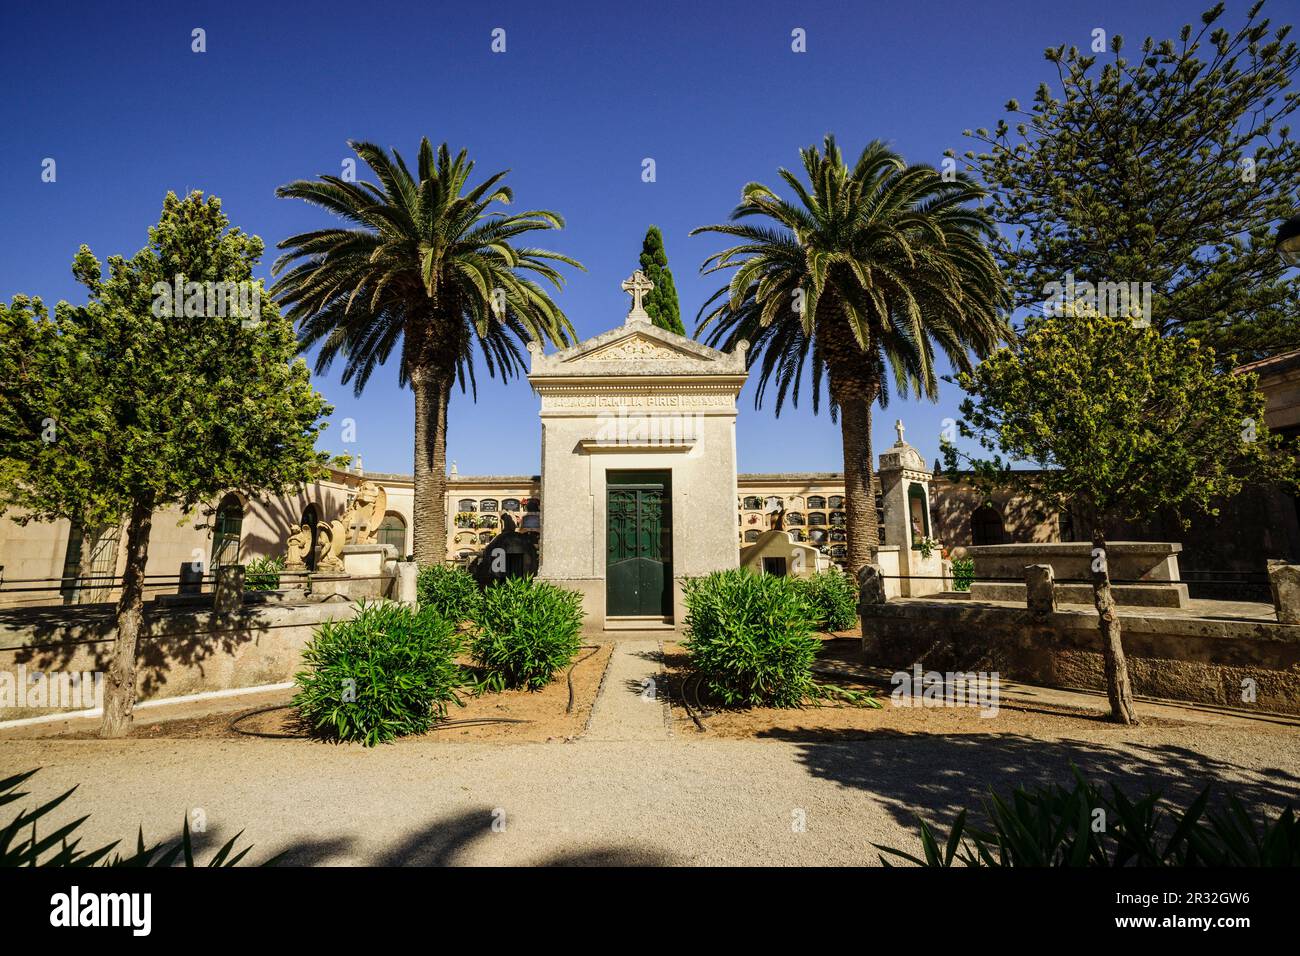 cementerio, Alaior, Menorca, Islas Baleares, españa, europa. Stock Photo